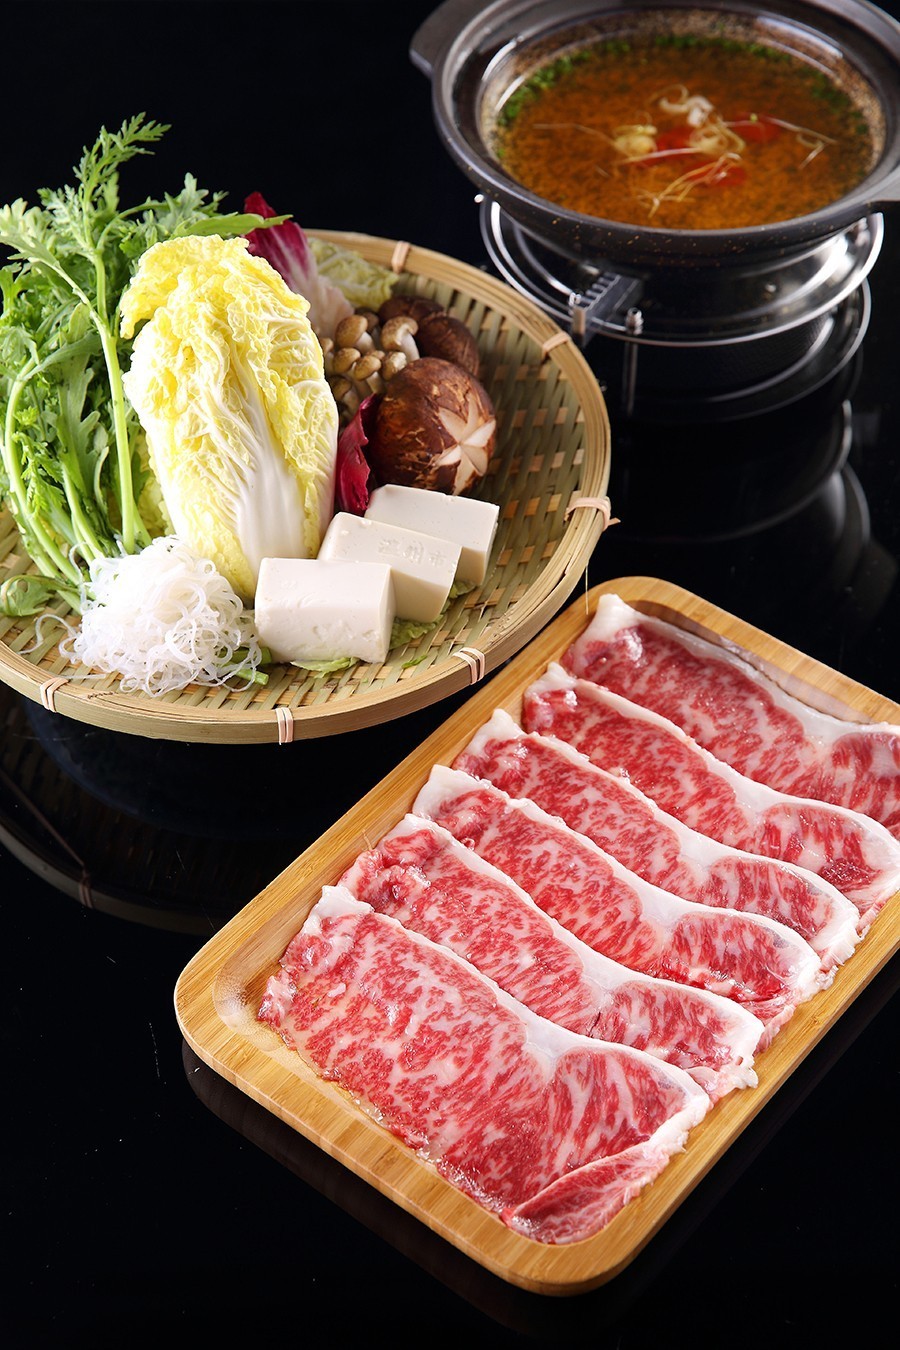 和牛寿喜锅和牛的肉多汁细嫩,肌肉脂肪中饱和脂肪酸含量很低,风味独特